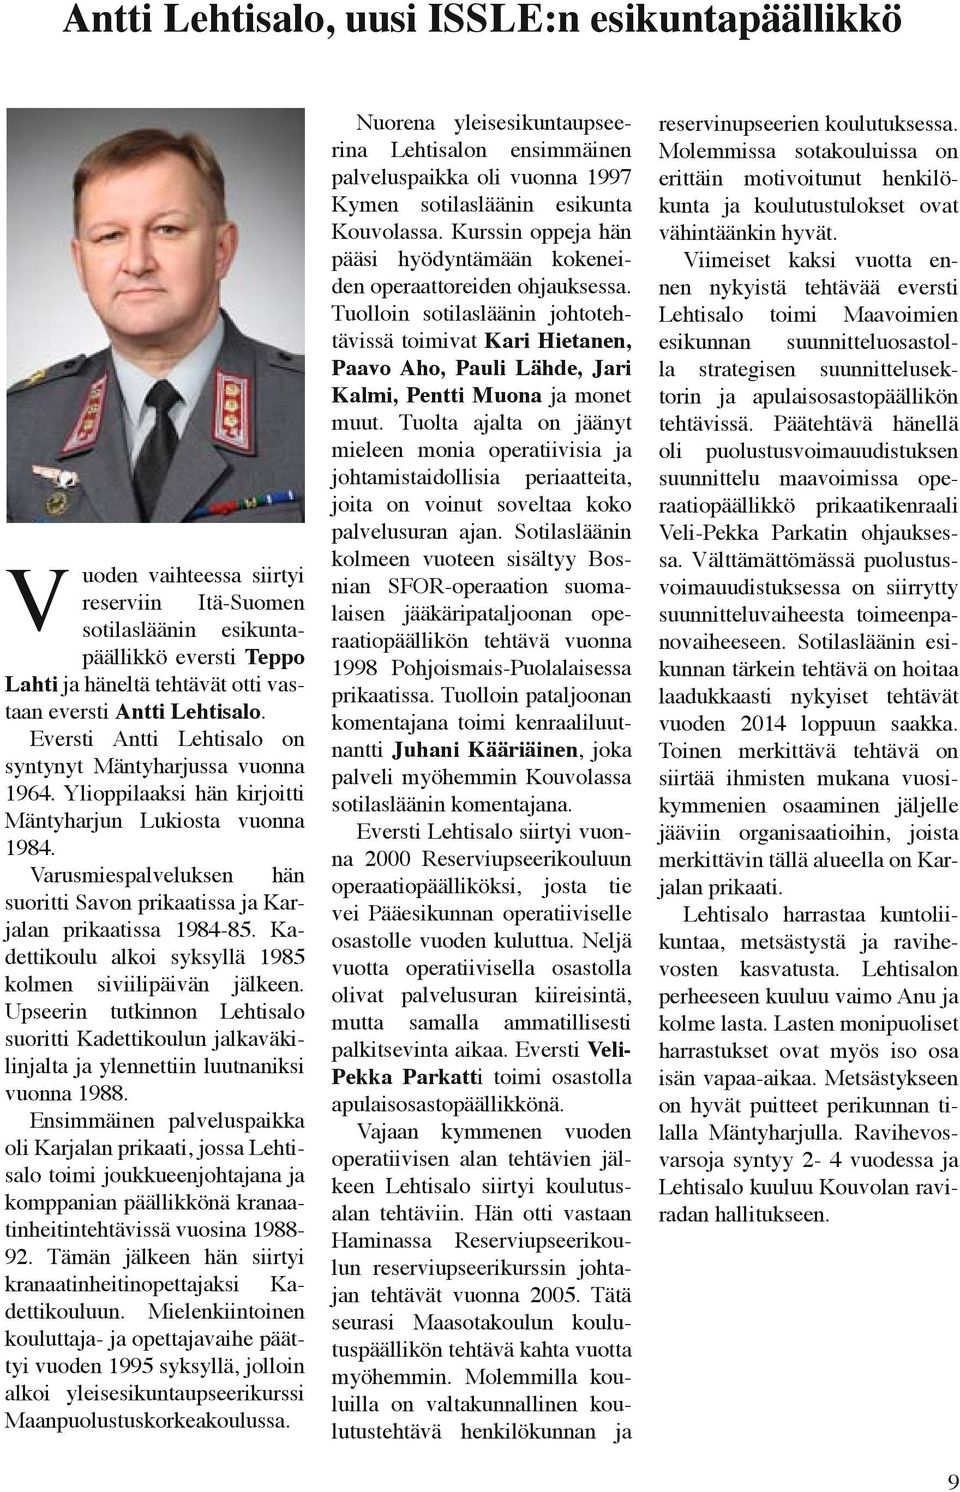 Varusmiespalveluksen hän suoritti Savon prikaatissa ja Karjalan prikaatissa 1984-85. Kadettikoulu alkoi syksyllä 1985 kolmen siviilipäivän jälkeen.